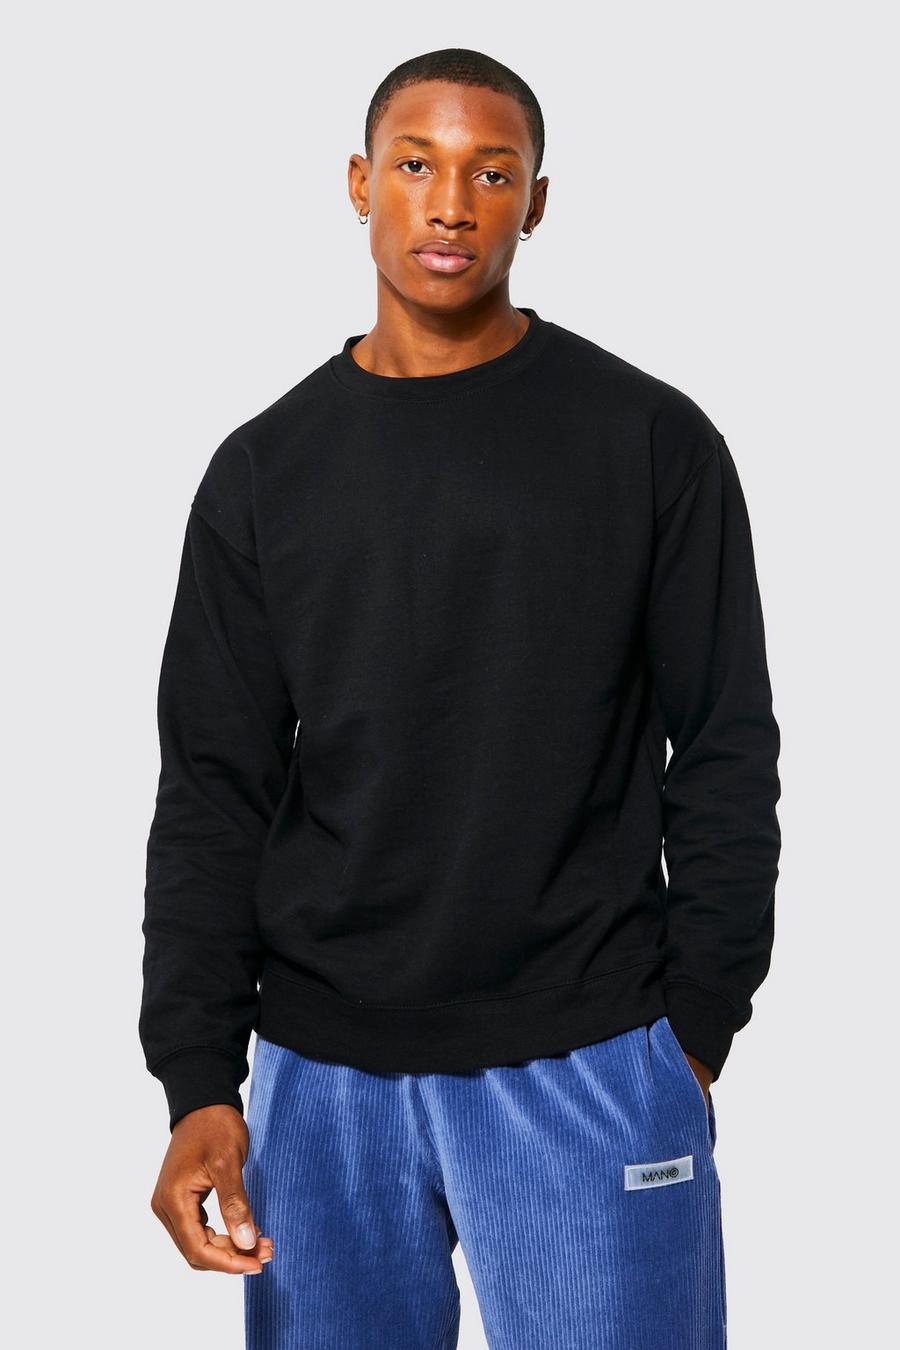 Basic Rundhals-Sweatshirt, Black schwarz